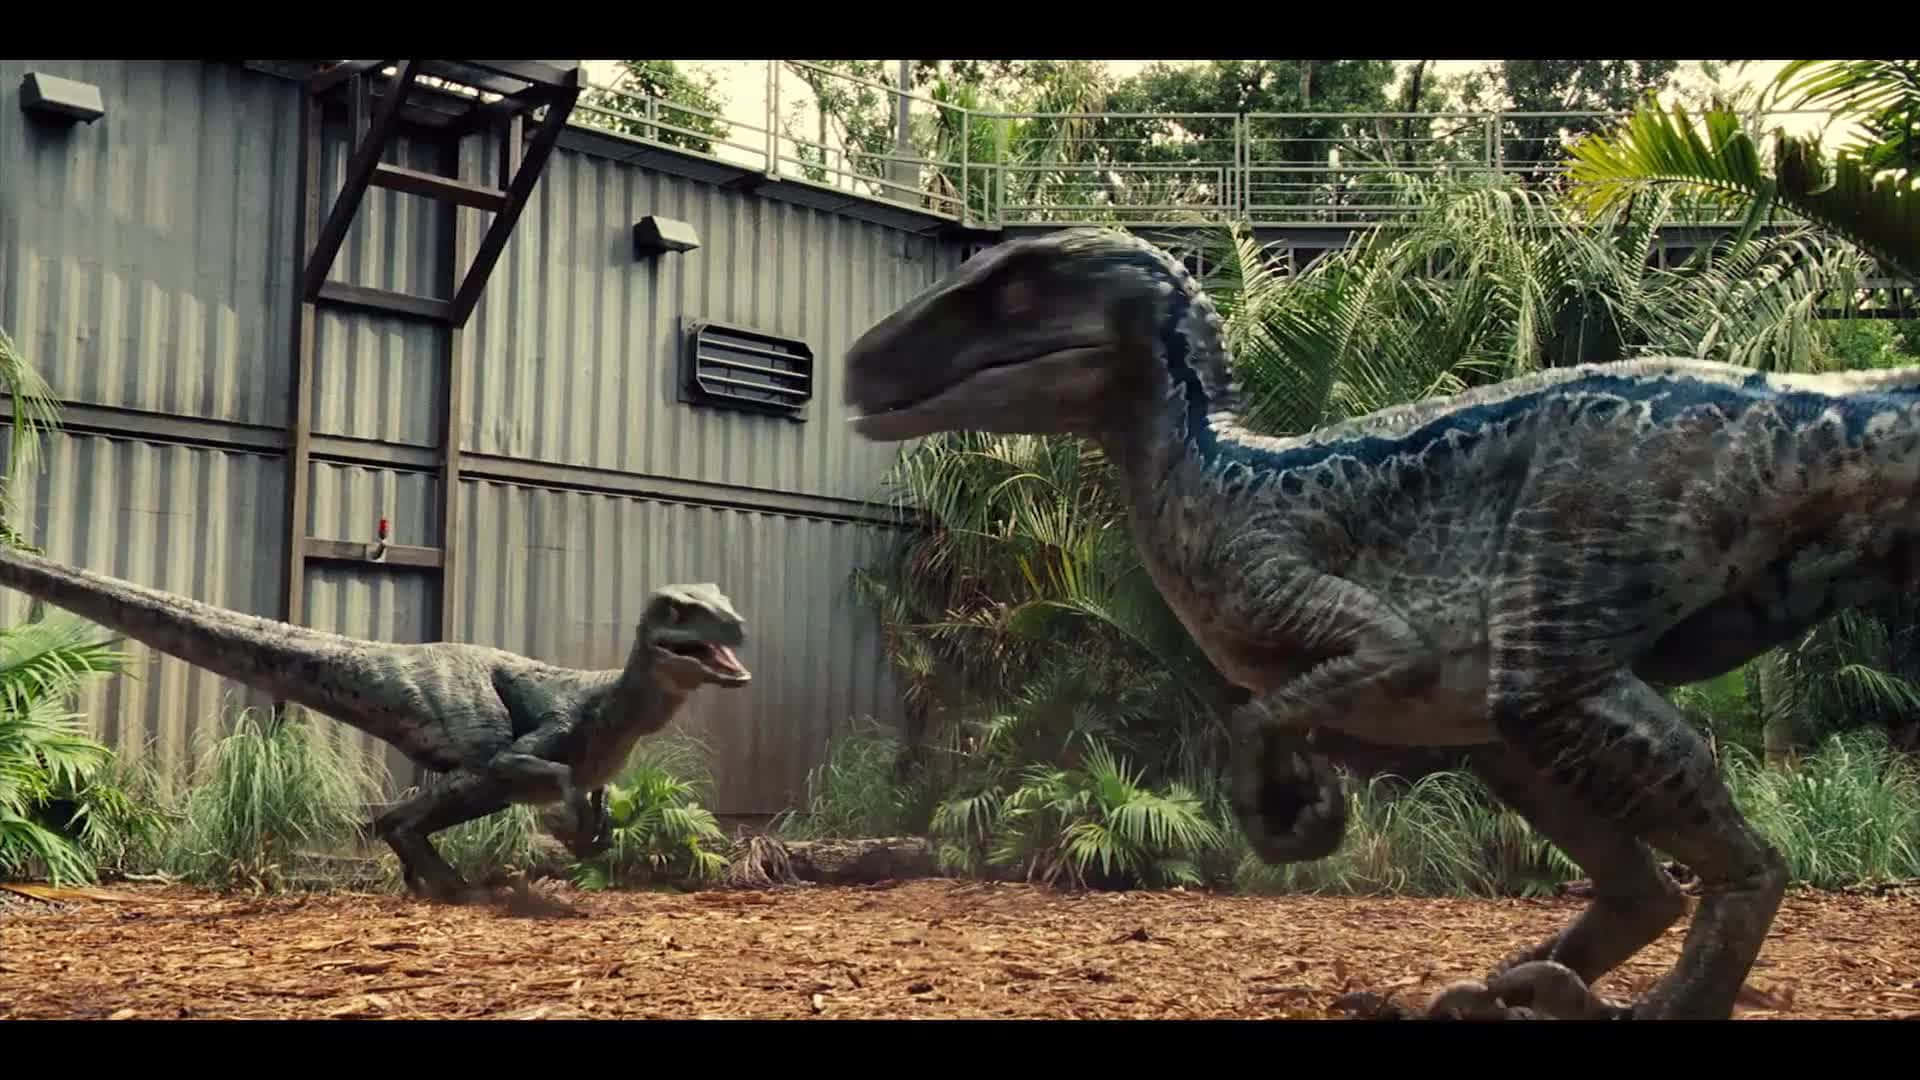 Umaimagem Realista De Um Dinossauro. Papel de Parede